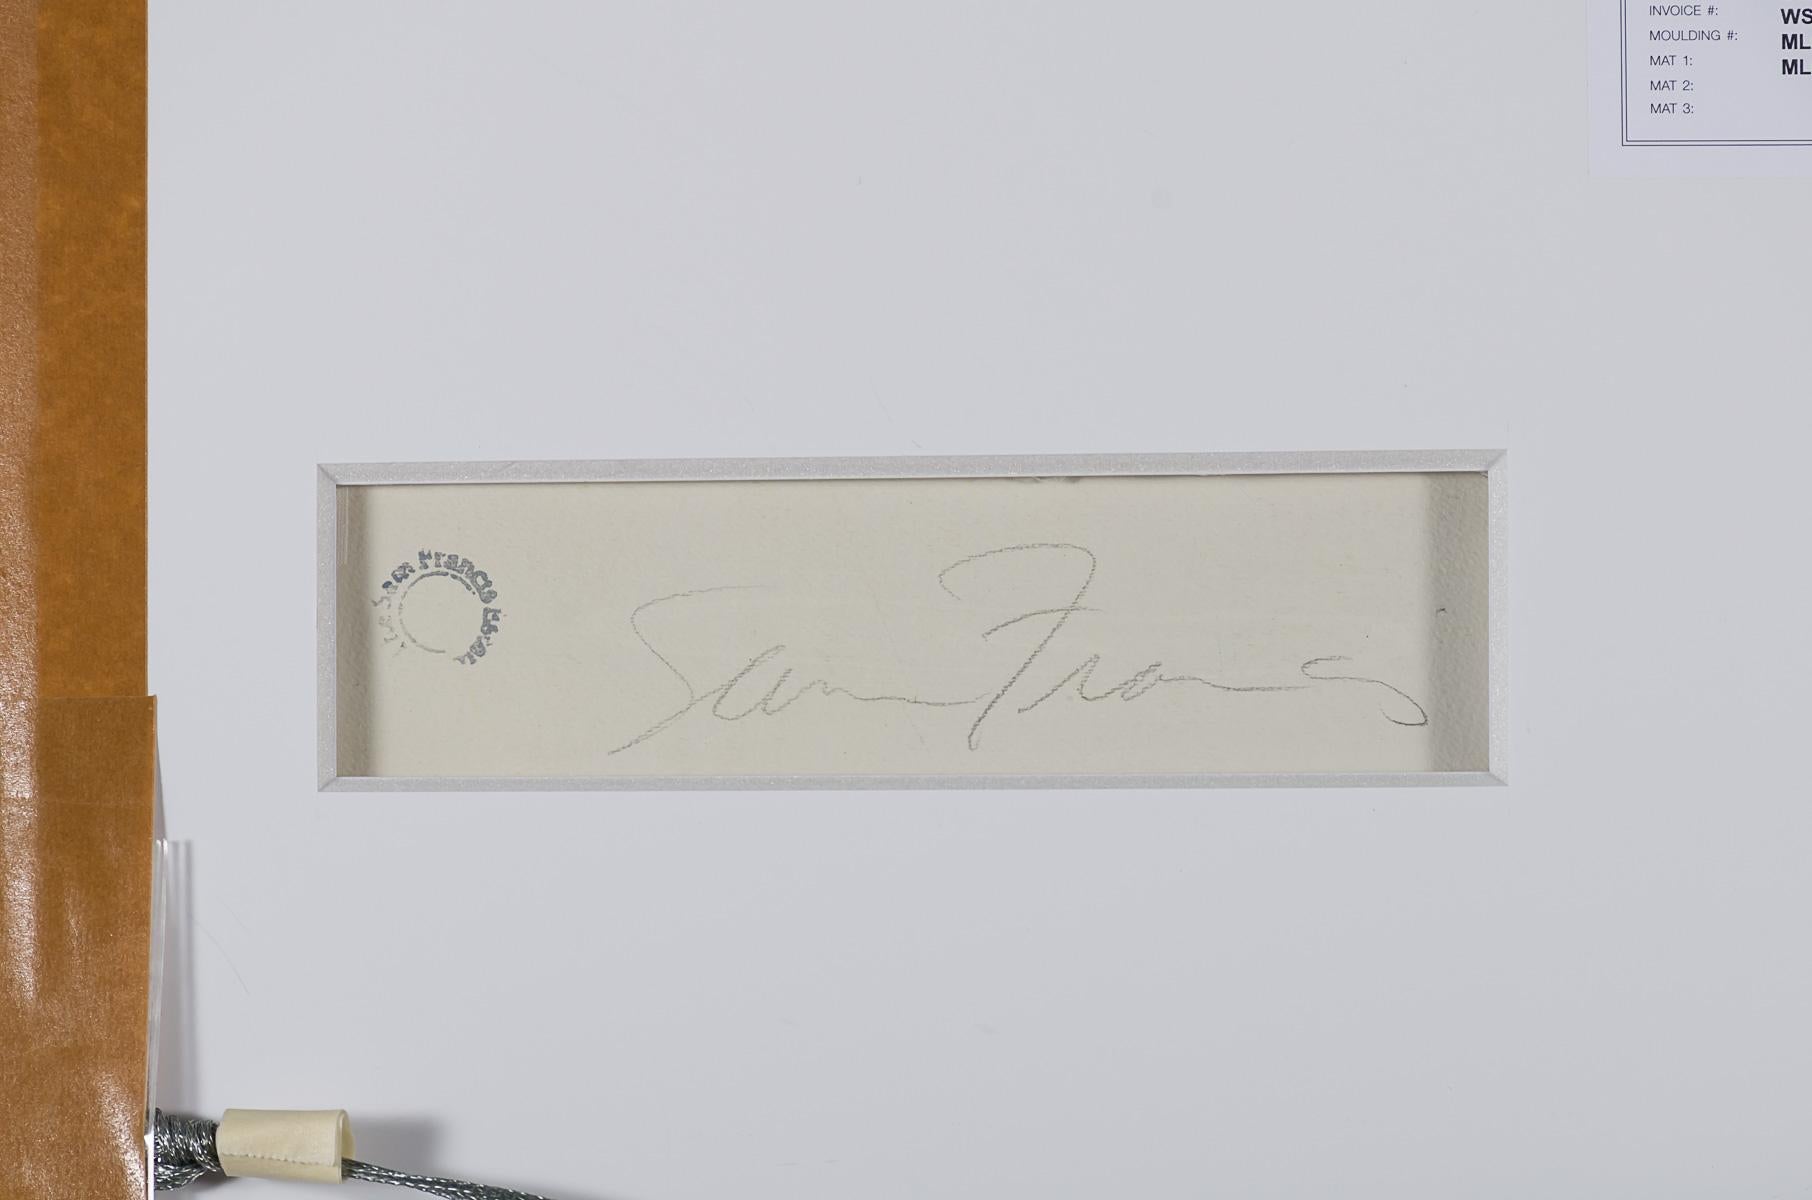 Sans titre (SF63-039) est une peinture acrylique sur papier, d'une taille de 41 x 27,5 pouces, signée 'Sam Francis' au verso, et encadrée dans un cadre contemporain en bois clair.

Untitled, 1963 (SF63-039) reflète l'amélioration de l'état de santé